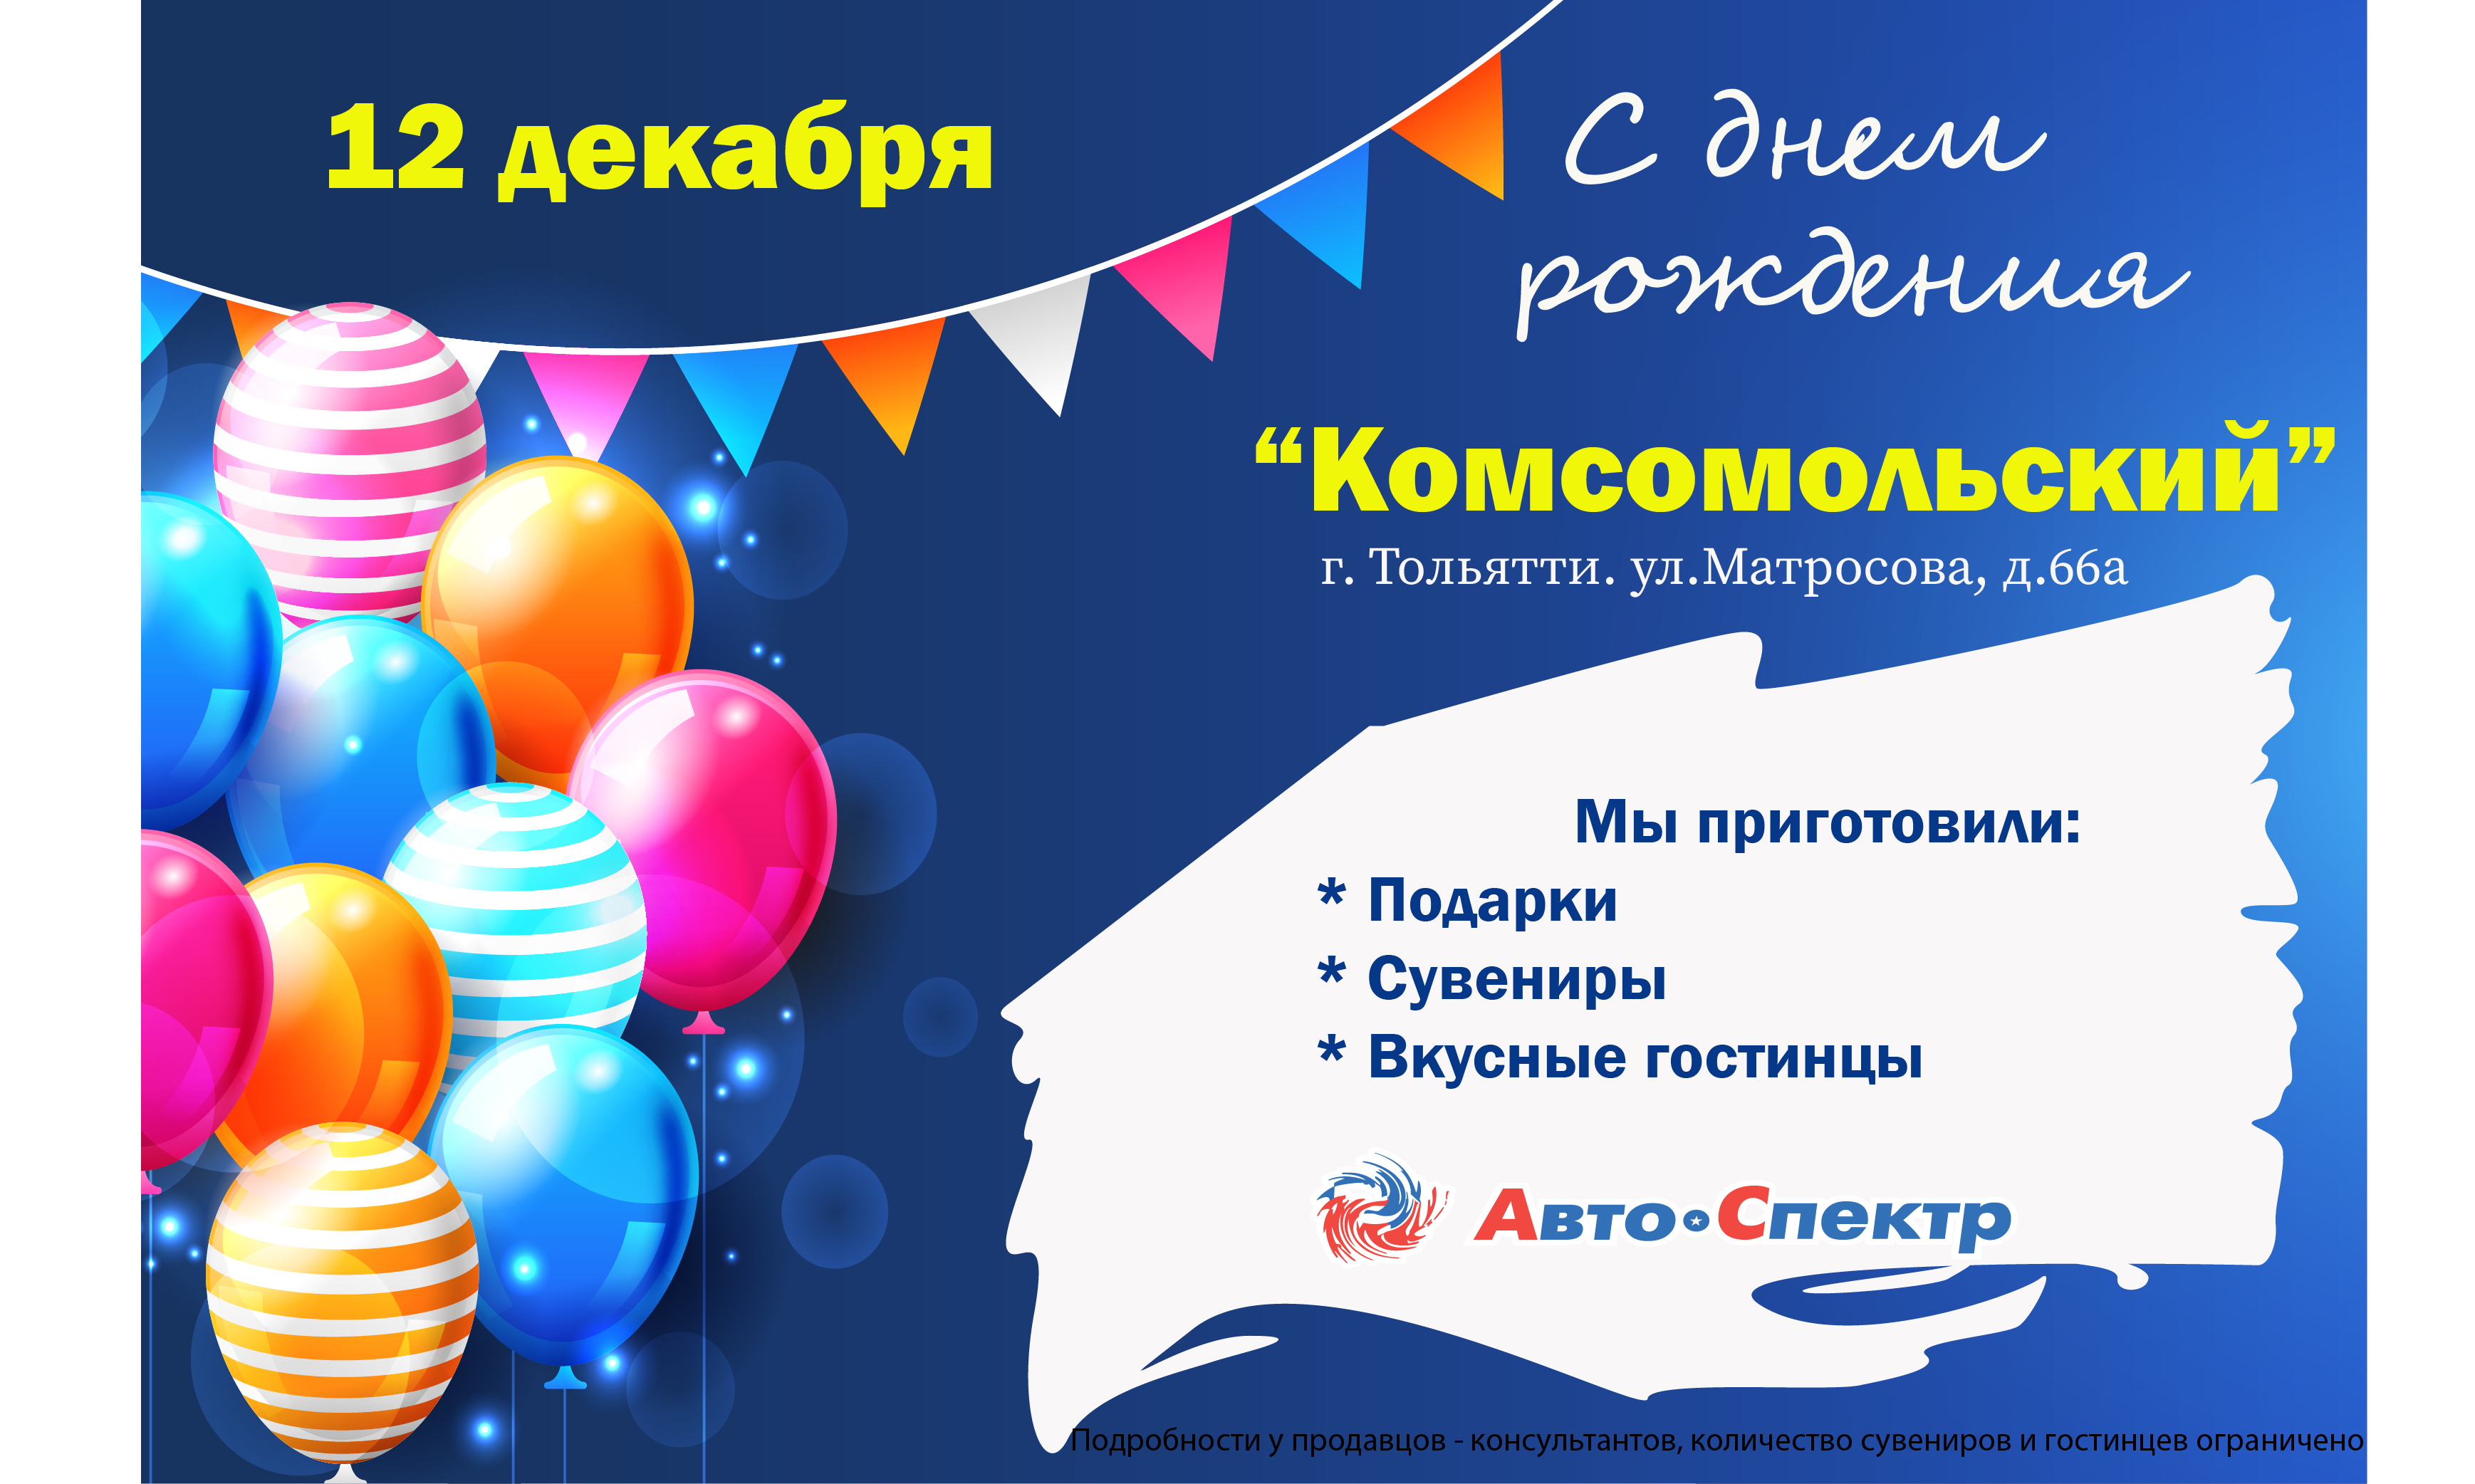 День рождения магазина "Комсомольский"